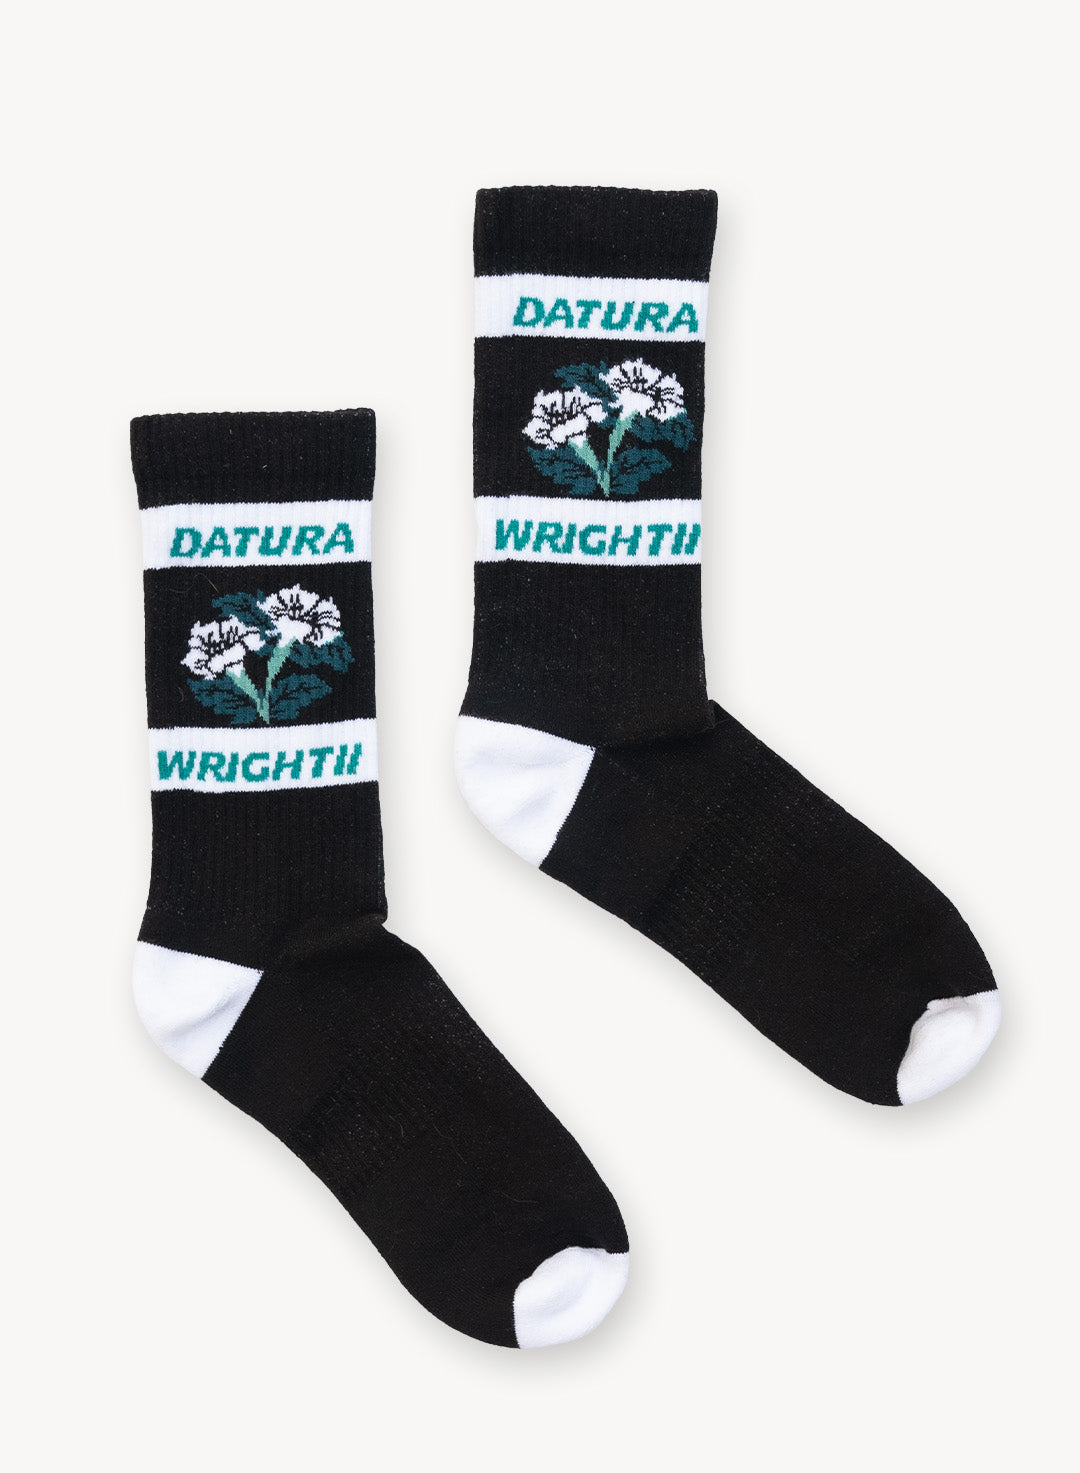 Sacred-Datura-Socks_Scientific.jpg